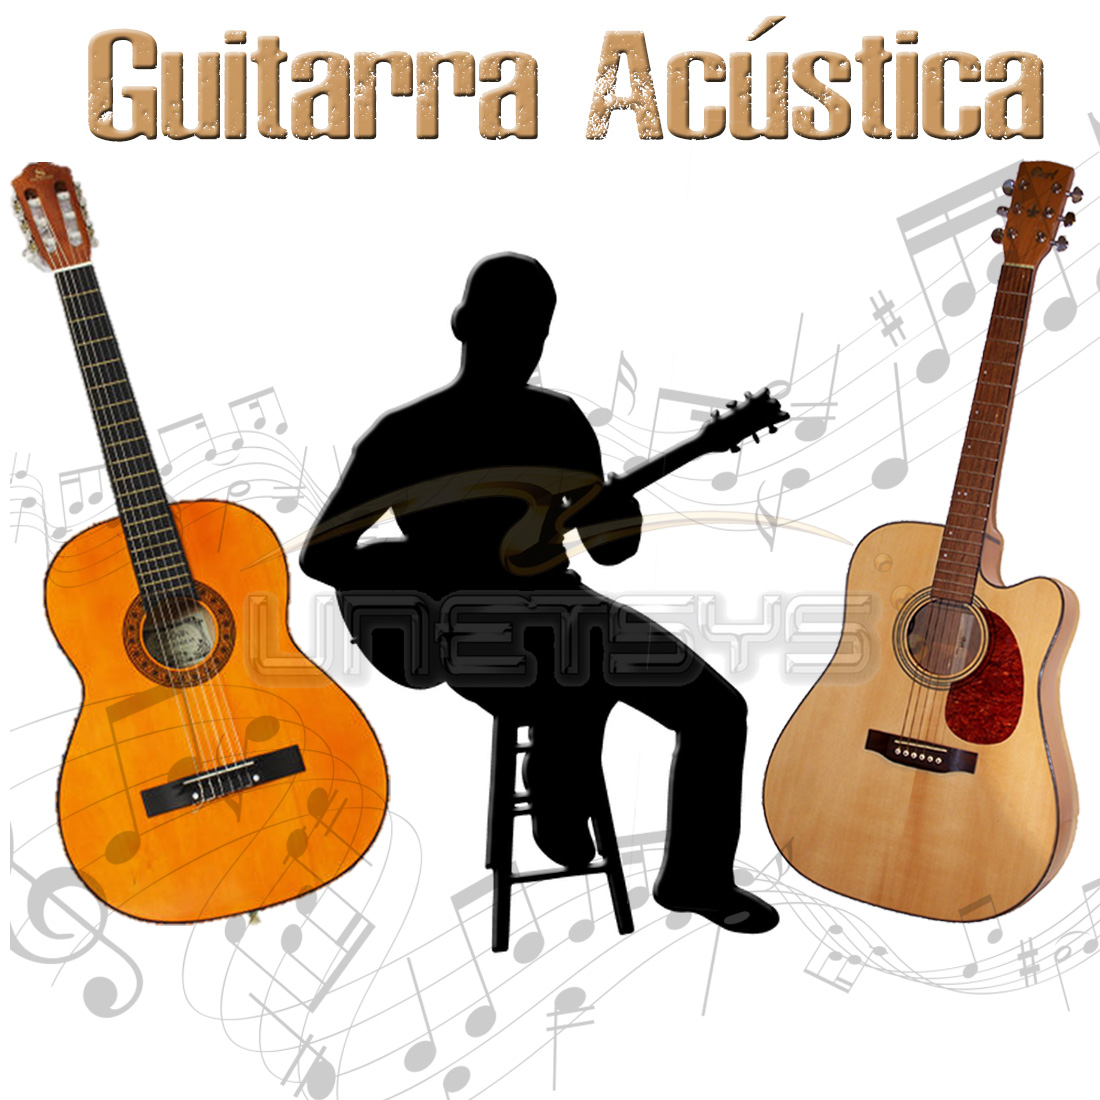 https://0201.nccdn.net/1_2/000/000/0af/e50/guitarra-ac--stica.jpg